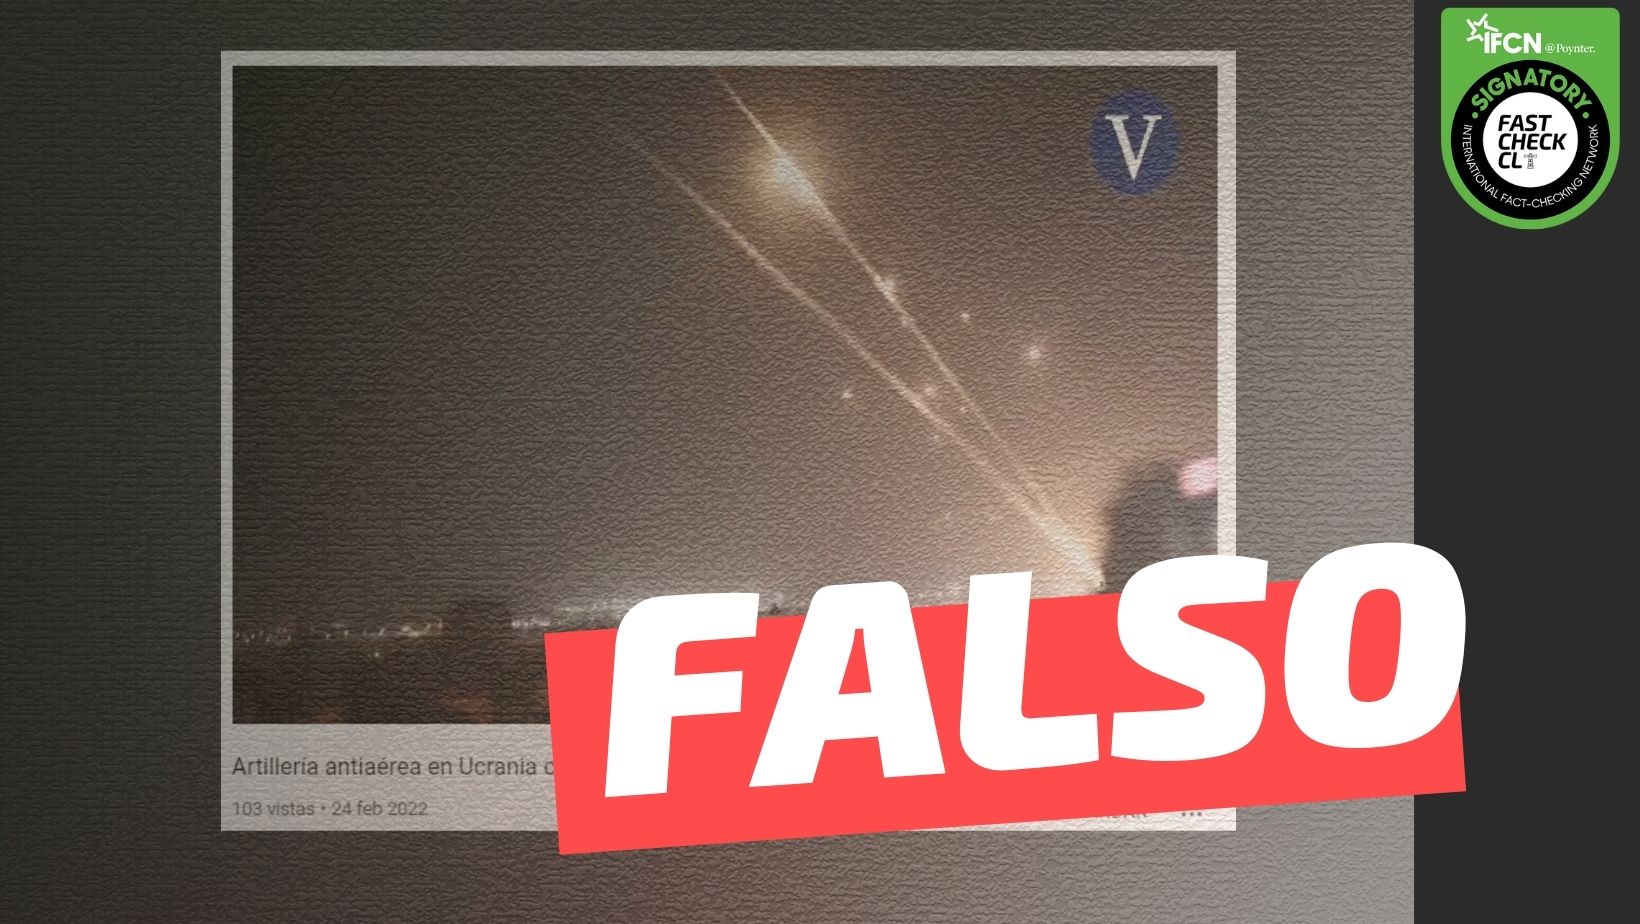 Read more about the article (Video) “Artillería antiaérea en Ucrania contra aviones rusos”: #Falso